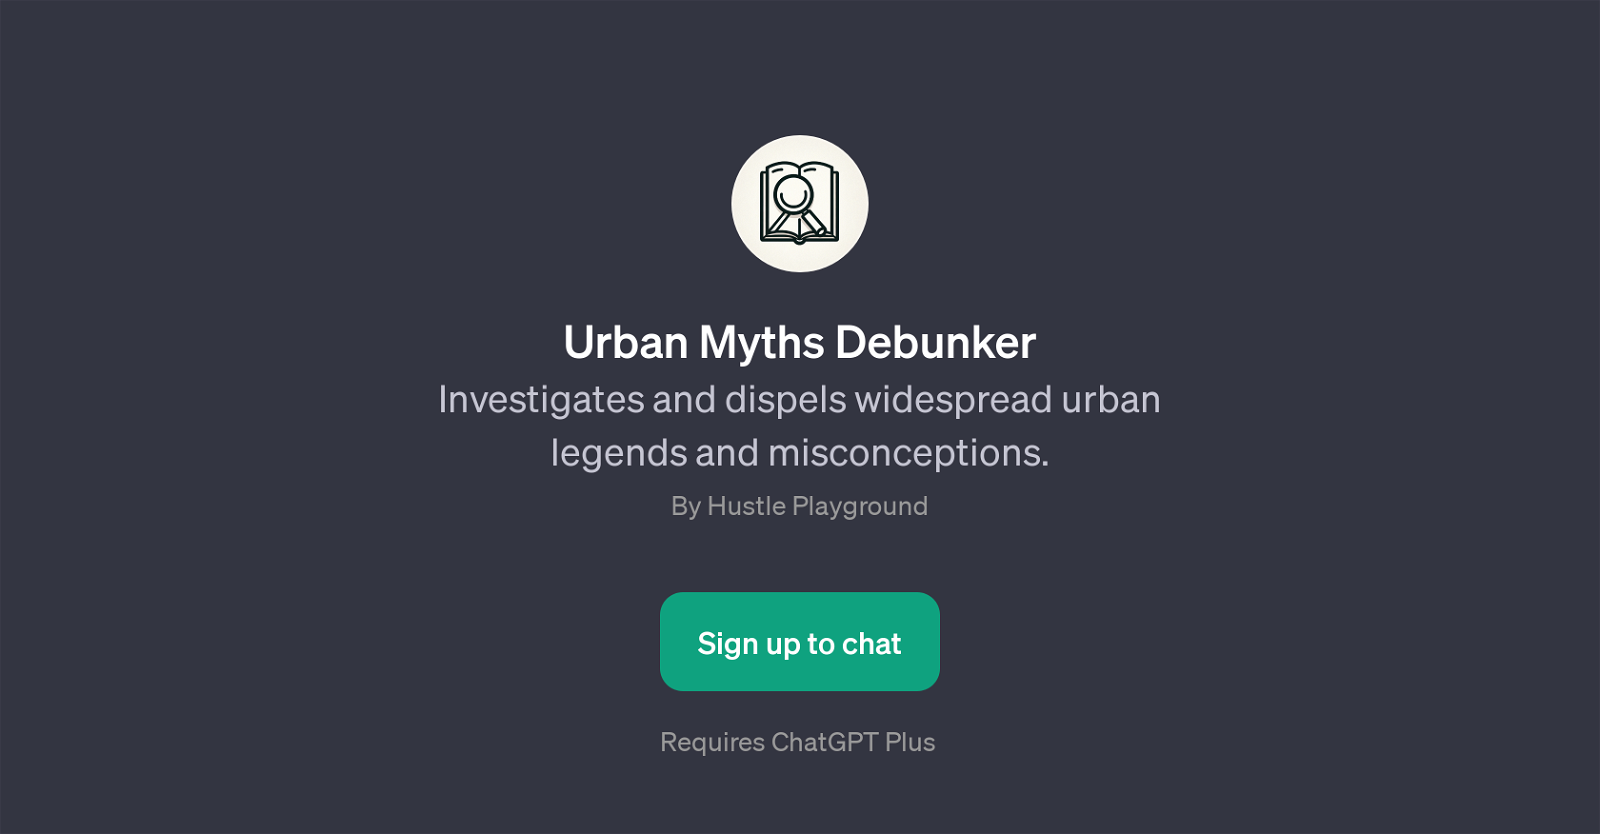 Urban Myths Debunker website